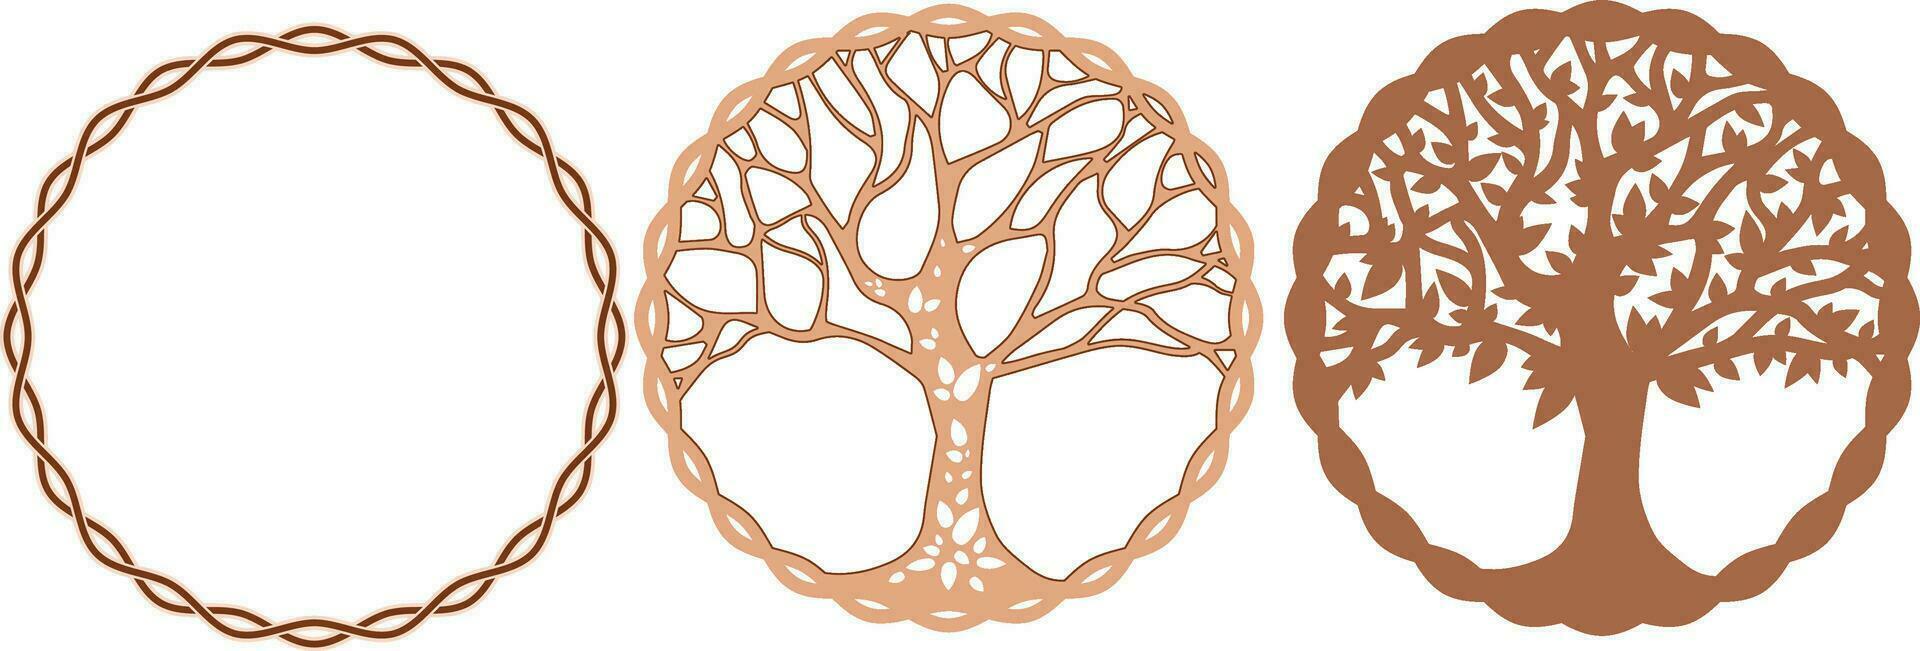 árbol de vida multicapa diseño archivos, pared decoración vector